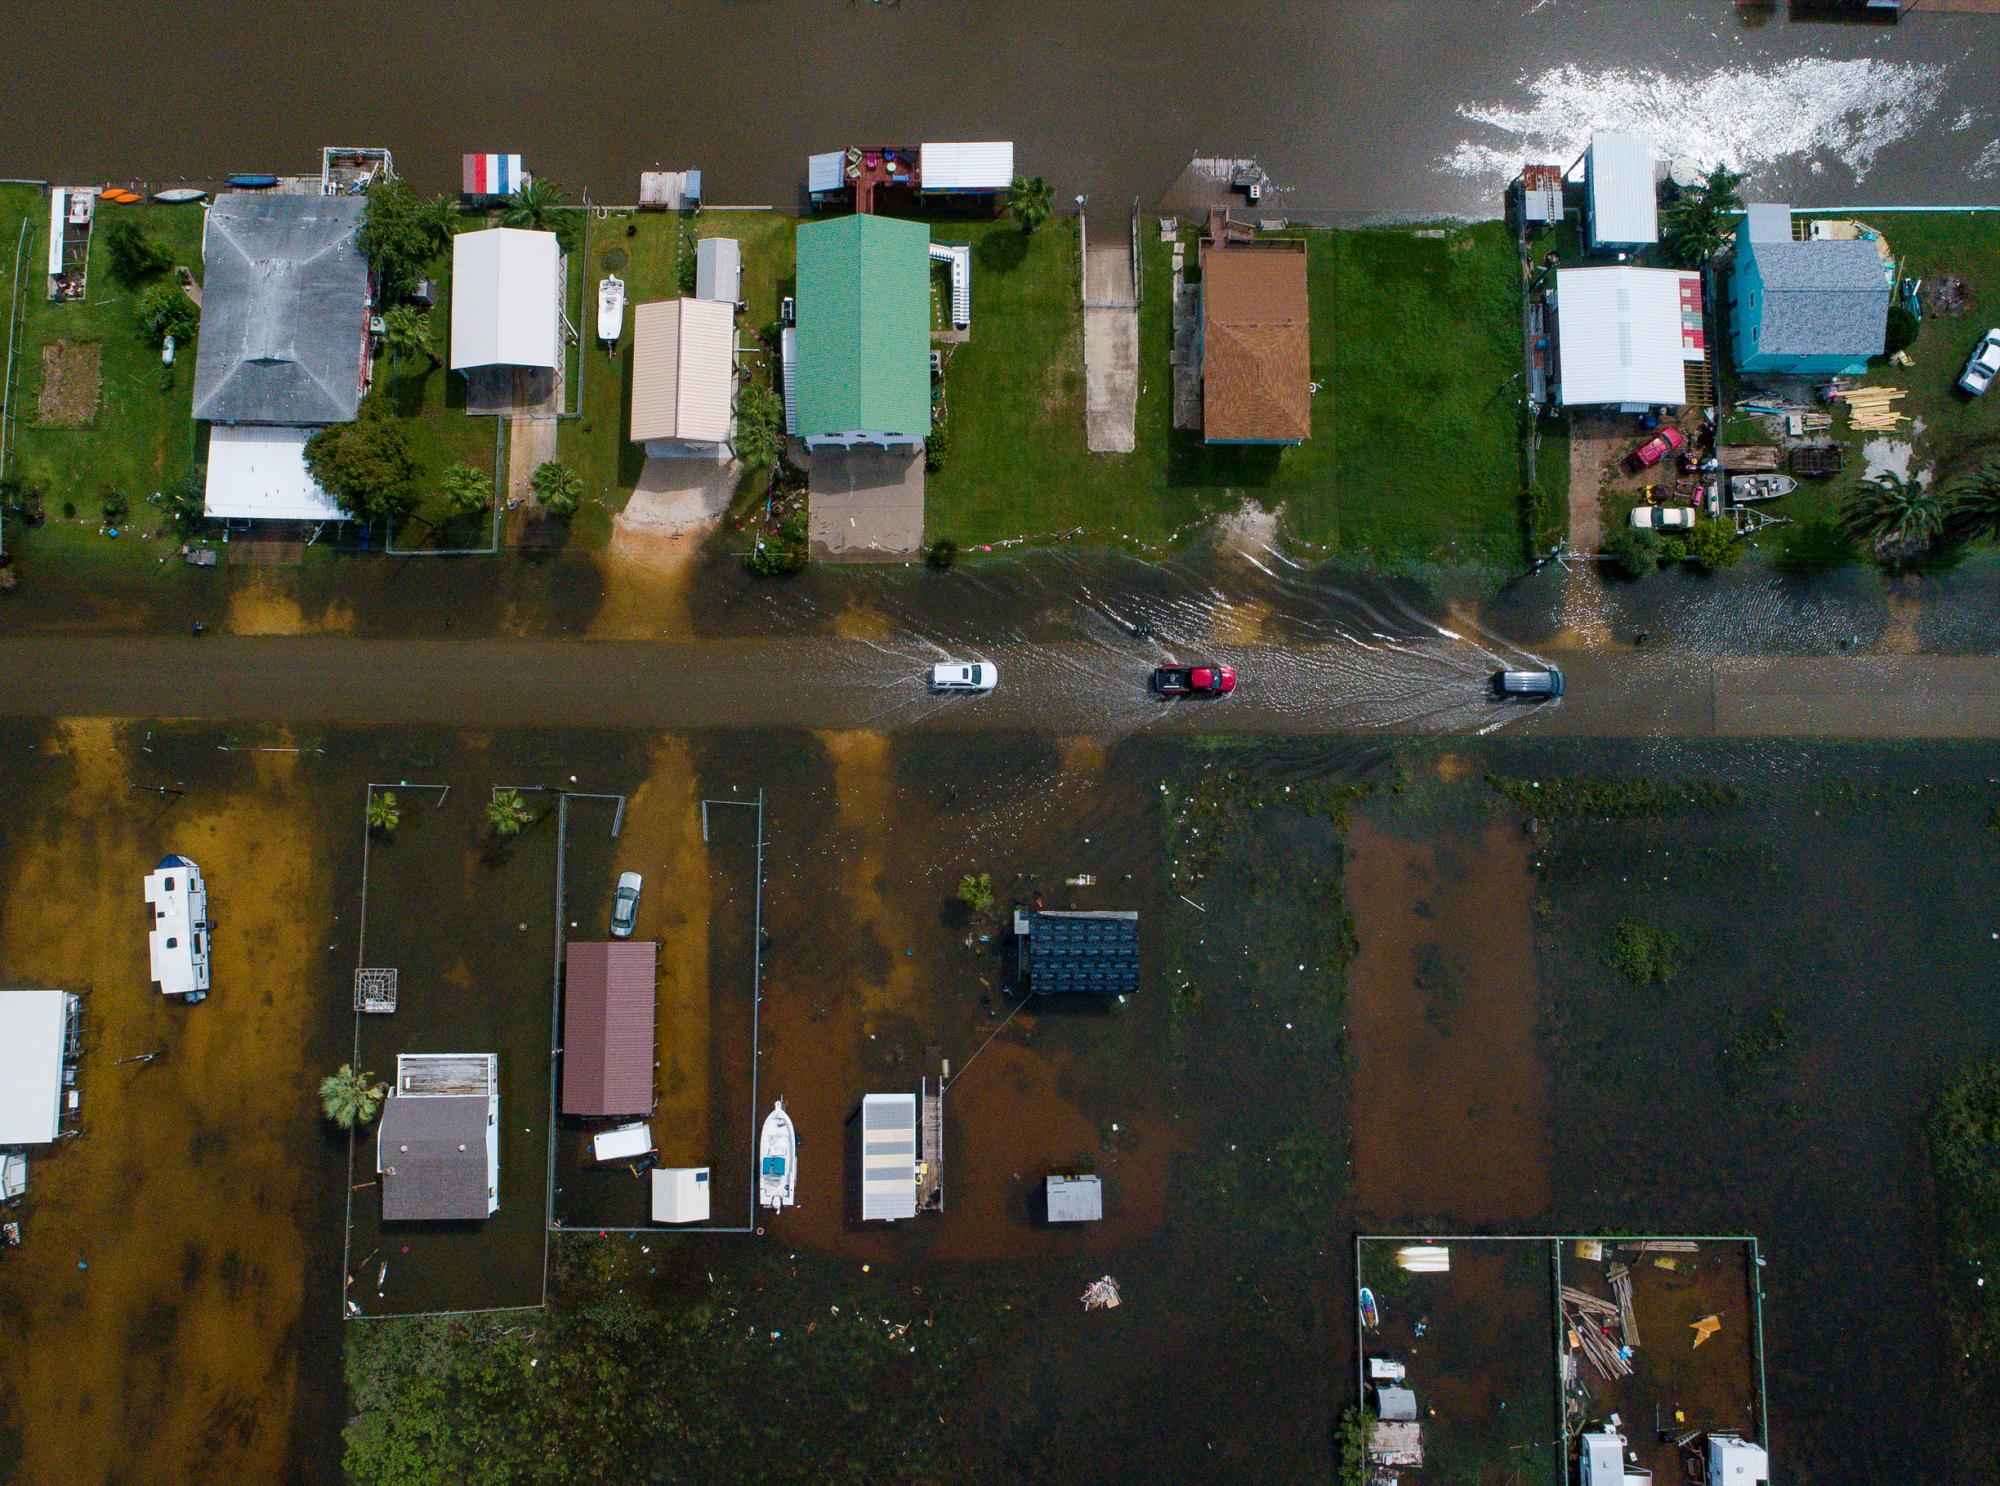 Los autos circulan por una calle inundada en Sargent, Texas, como se ve en esta foto aérea el miércoles 18 de septiembre de 2019. Sargent recibió 22 pulgadas de lluvia desde que la tormenta tropical Imelda golpeó el área el martes, según el agente del condado de Matagorda Bill Orton. 